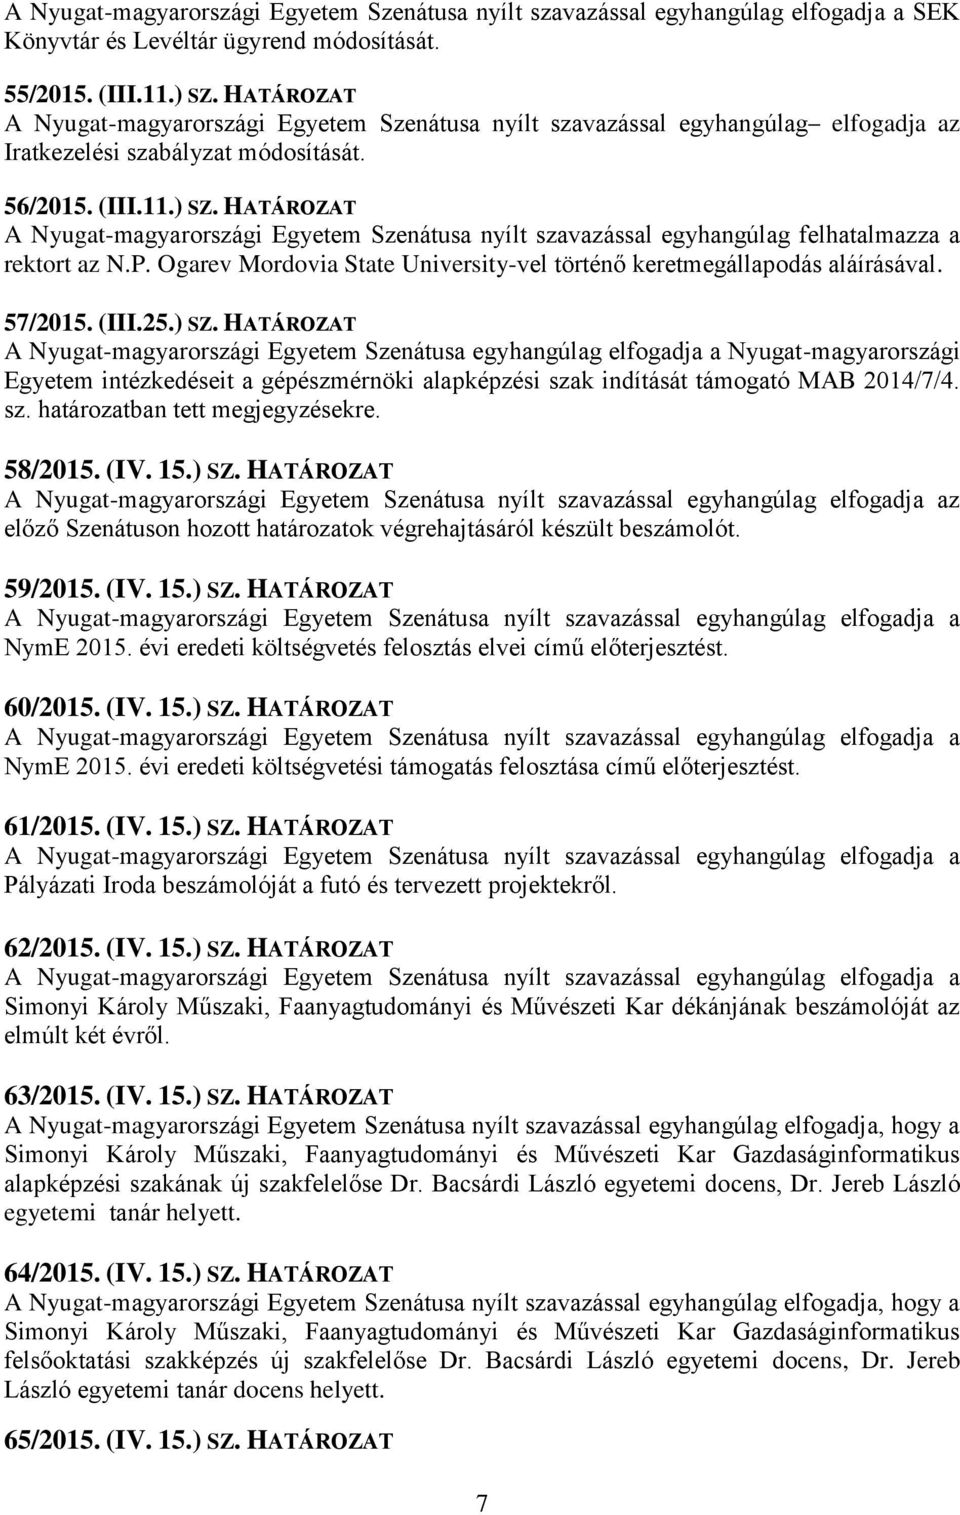 HATÁROZAT A Nyugat-magyarországi Egyetem Szenátusa egyhangúlag elfogadja a Nyugat-magyarországi Egyetem intézkedéseit a gépészmérnöki alapképzési szak indítását támogató MAB 2014/7/4. sz. határozatban tett megjegyzésekre.